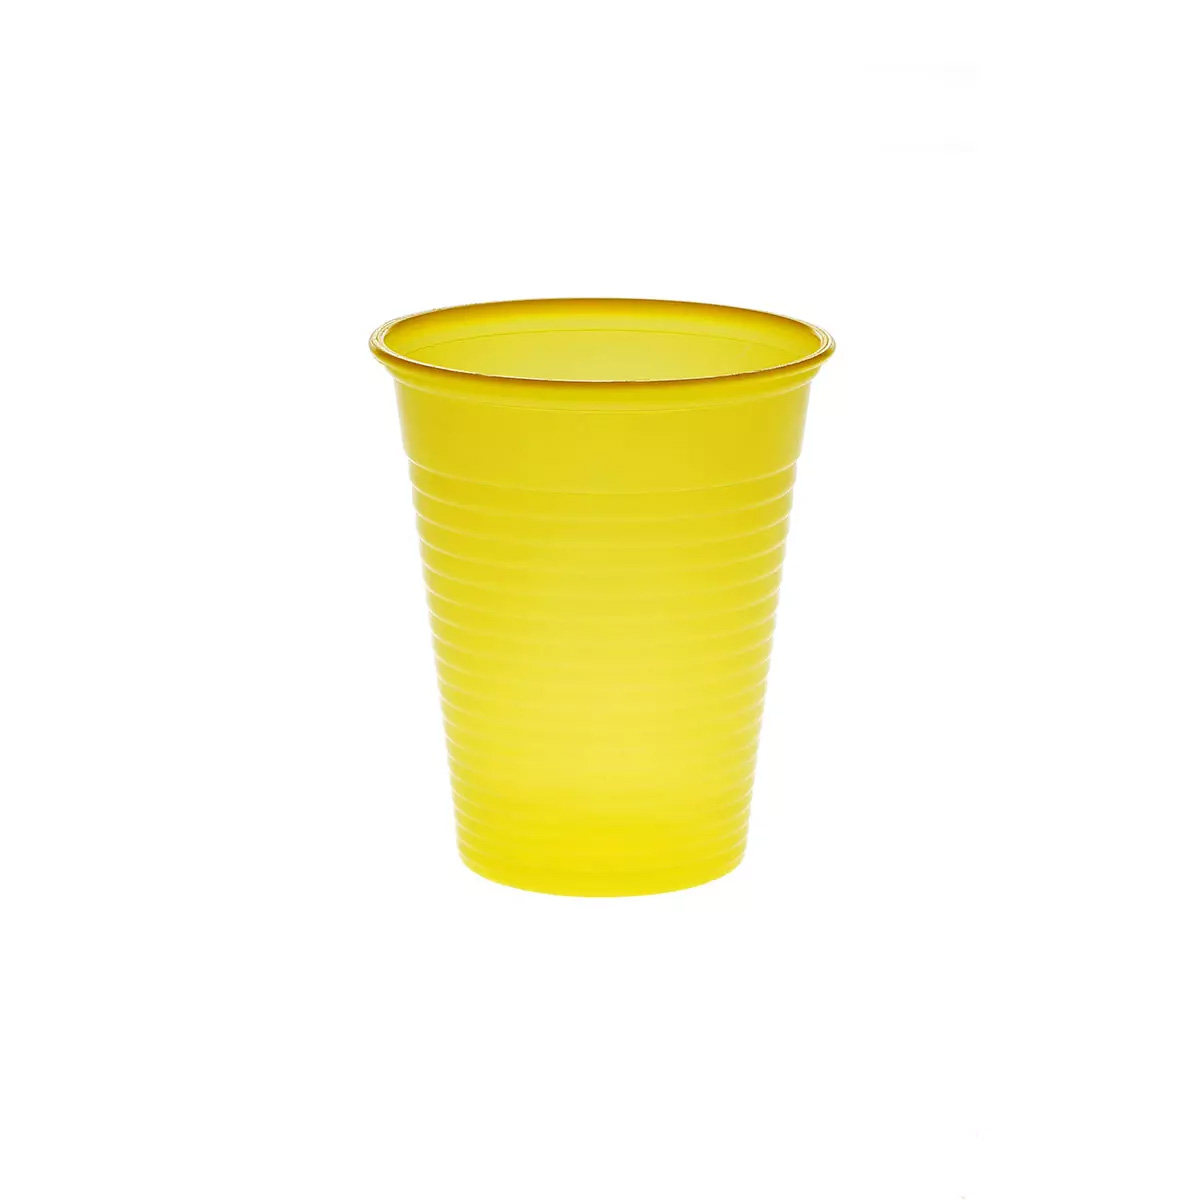 Mundspülbecher Cups 180 ml aus Kunststoff - Mit abgerundetem Rand. Stabil. in vielen verschiedenen Farben.